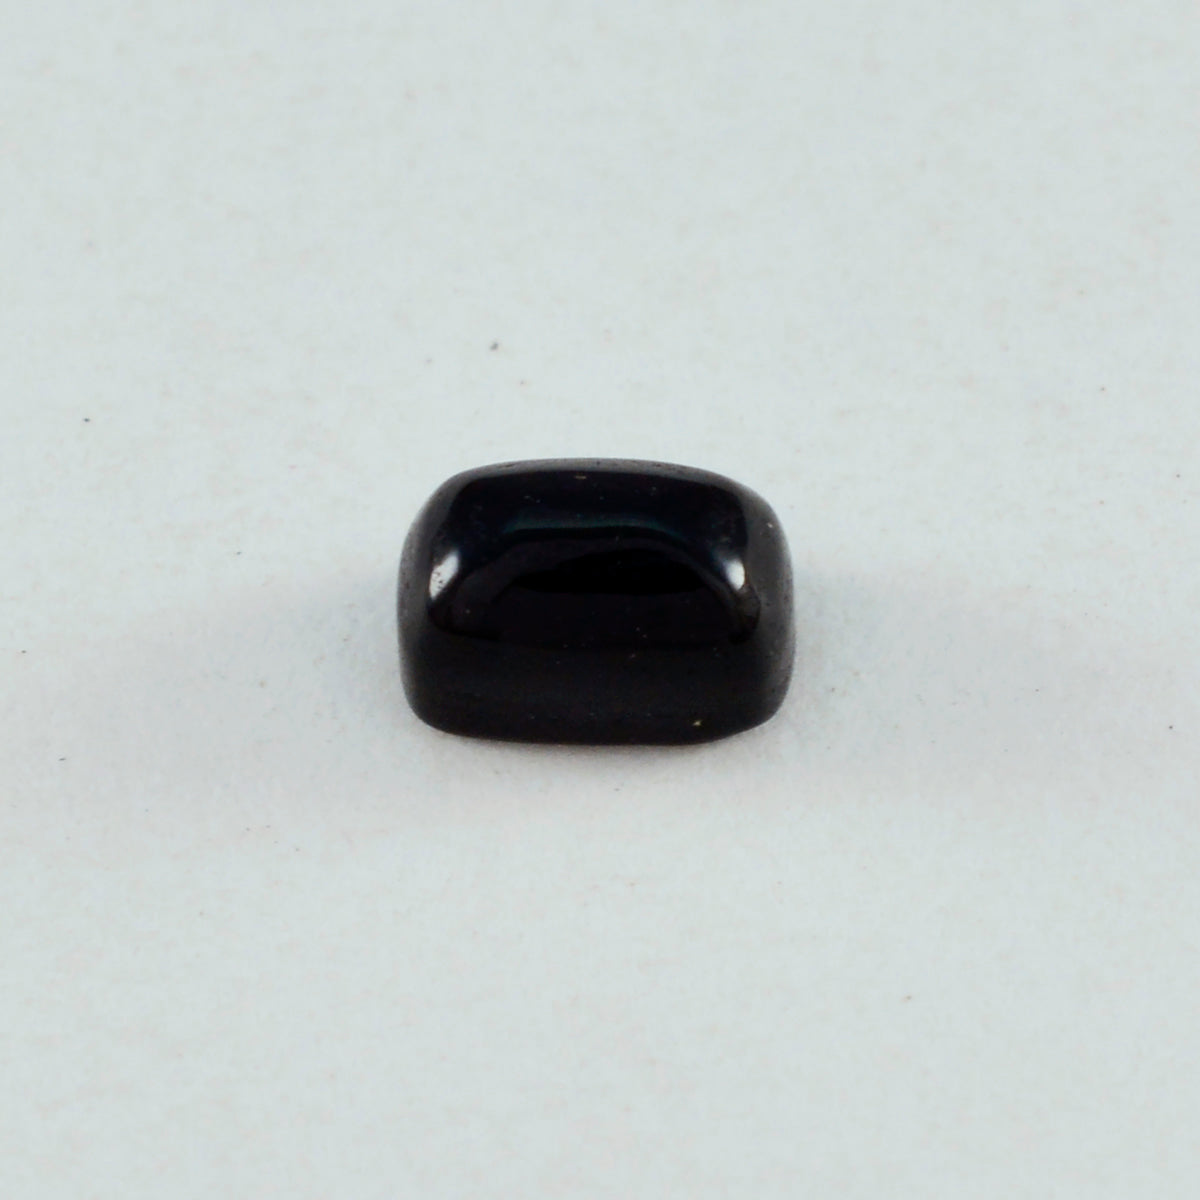 Riyogems 1PC zwarte onyx cabochon 7x9 mm achthoekige vorm uitstekende kwaliteit losse steen